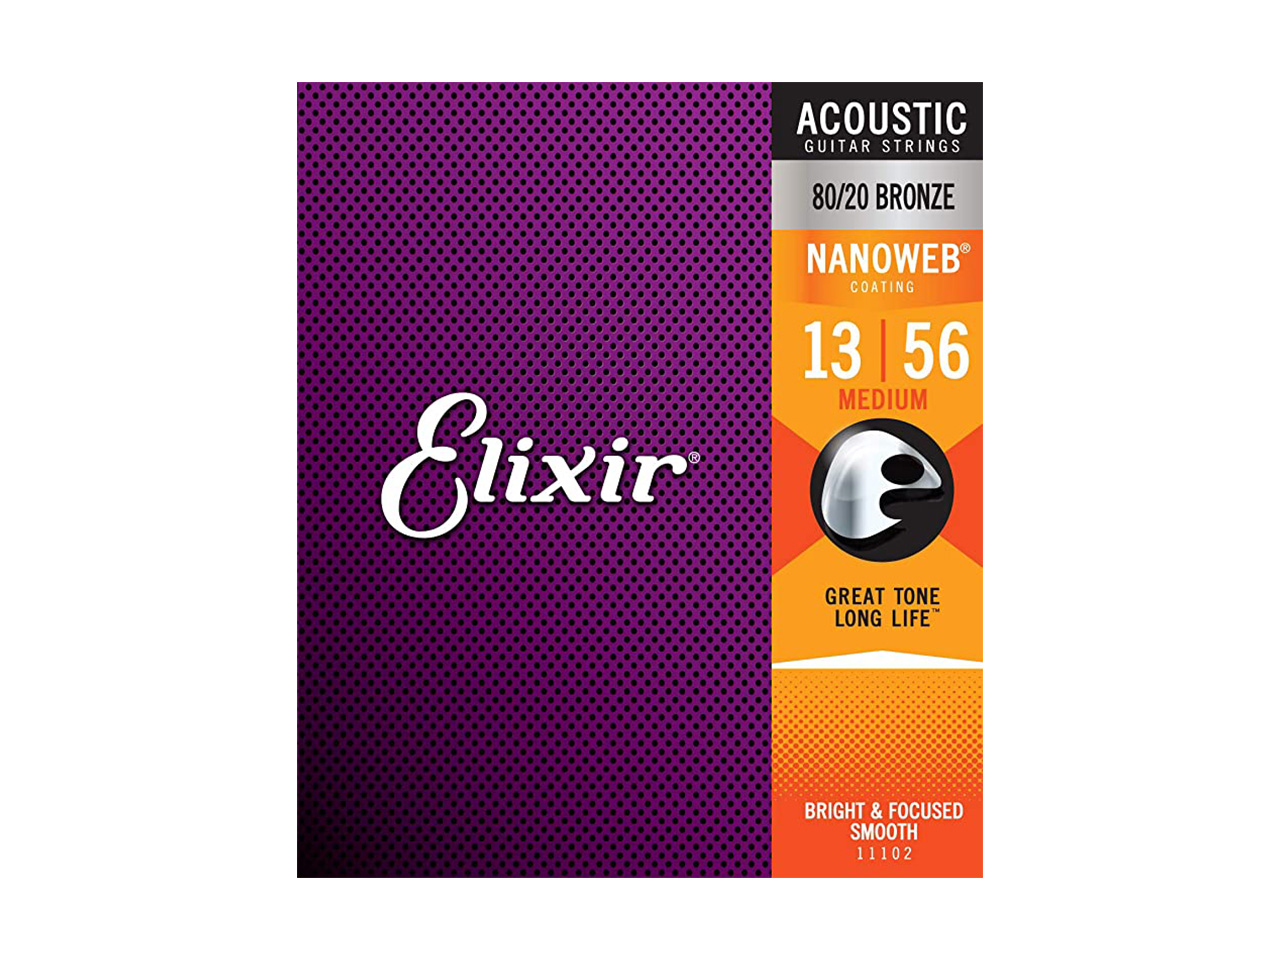 Elixir(エリクサー) NANOWEB Acoustic 80/20 Bronze Light Medium【11102】 / 013-056 (アコースティックギター弦)